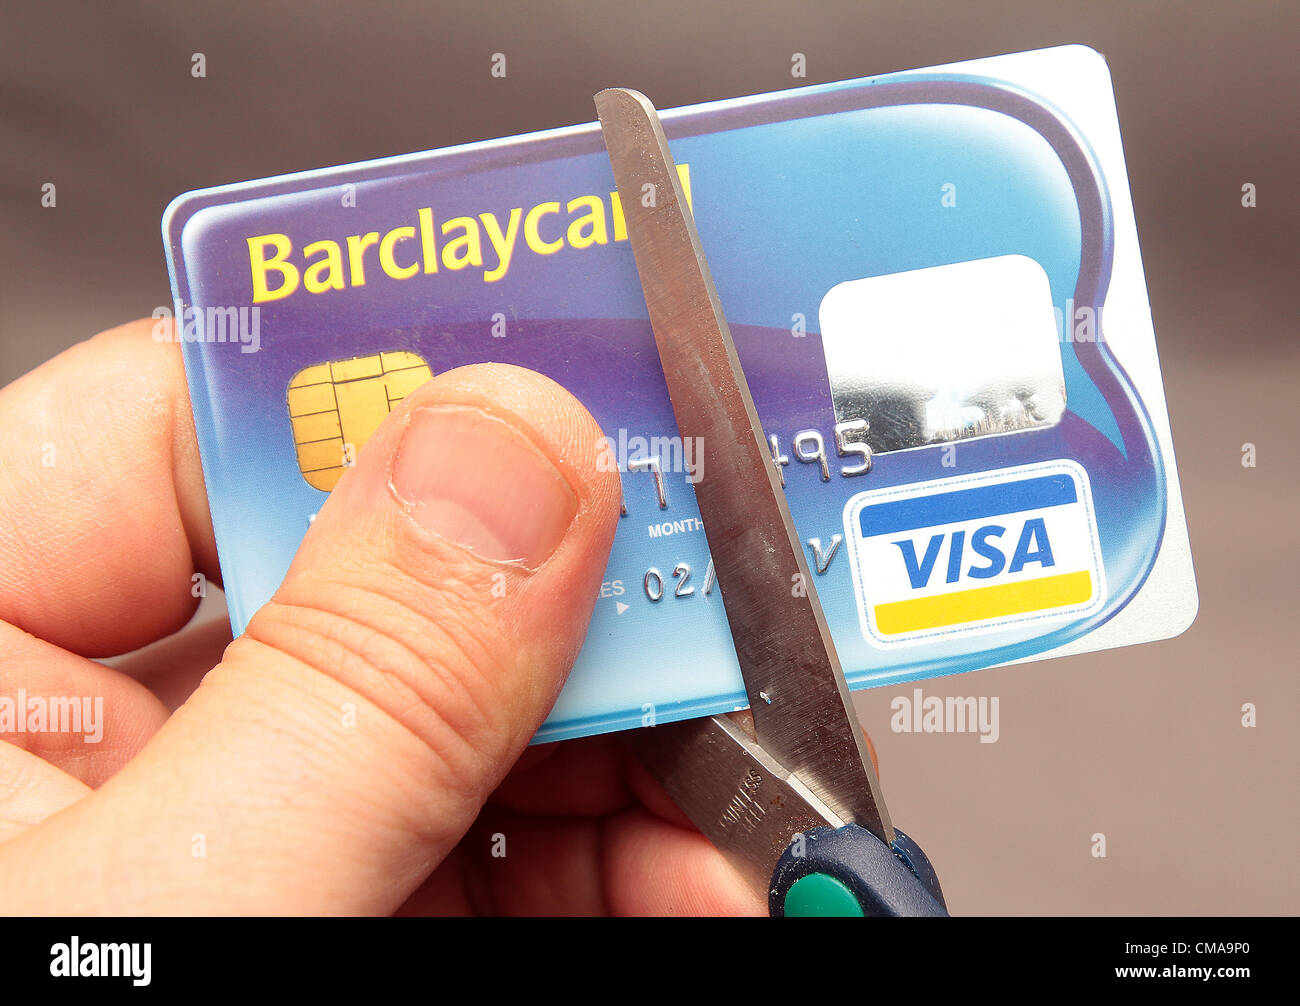 Mock-up einer Barclaycard Kreditkarte wird halbiert aus Protest gegen Barclays Bank Libor-Skandal im Vereinigten Königreich Stockfoto